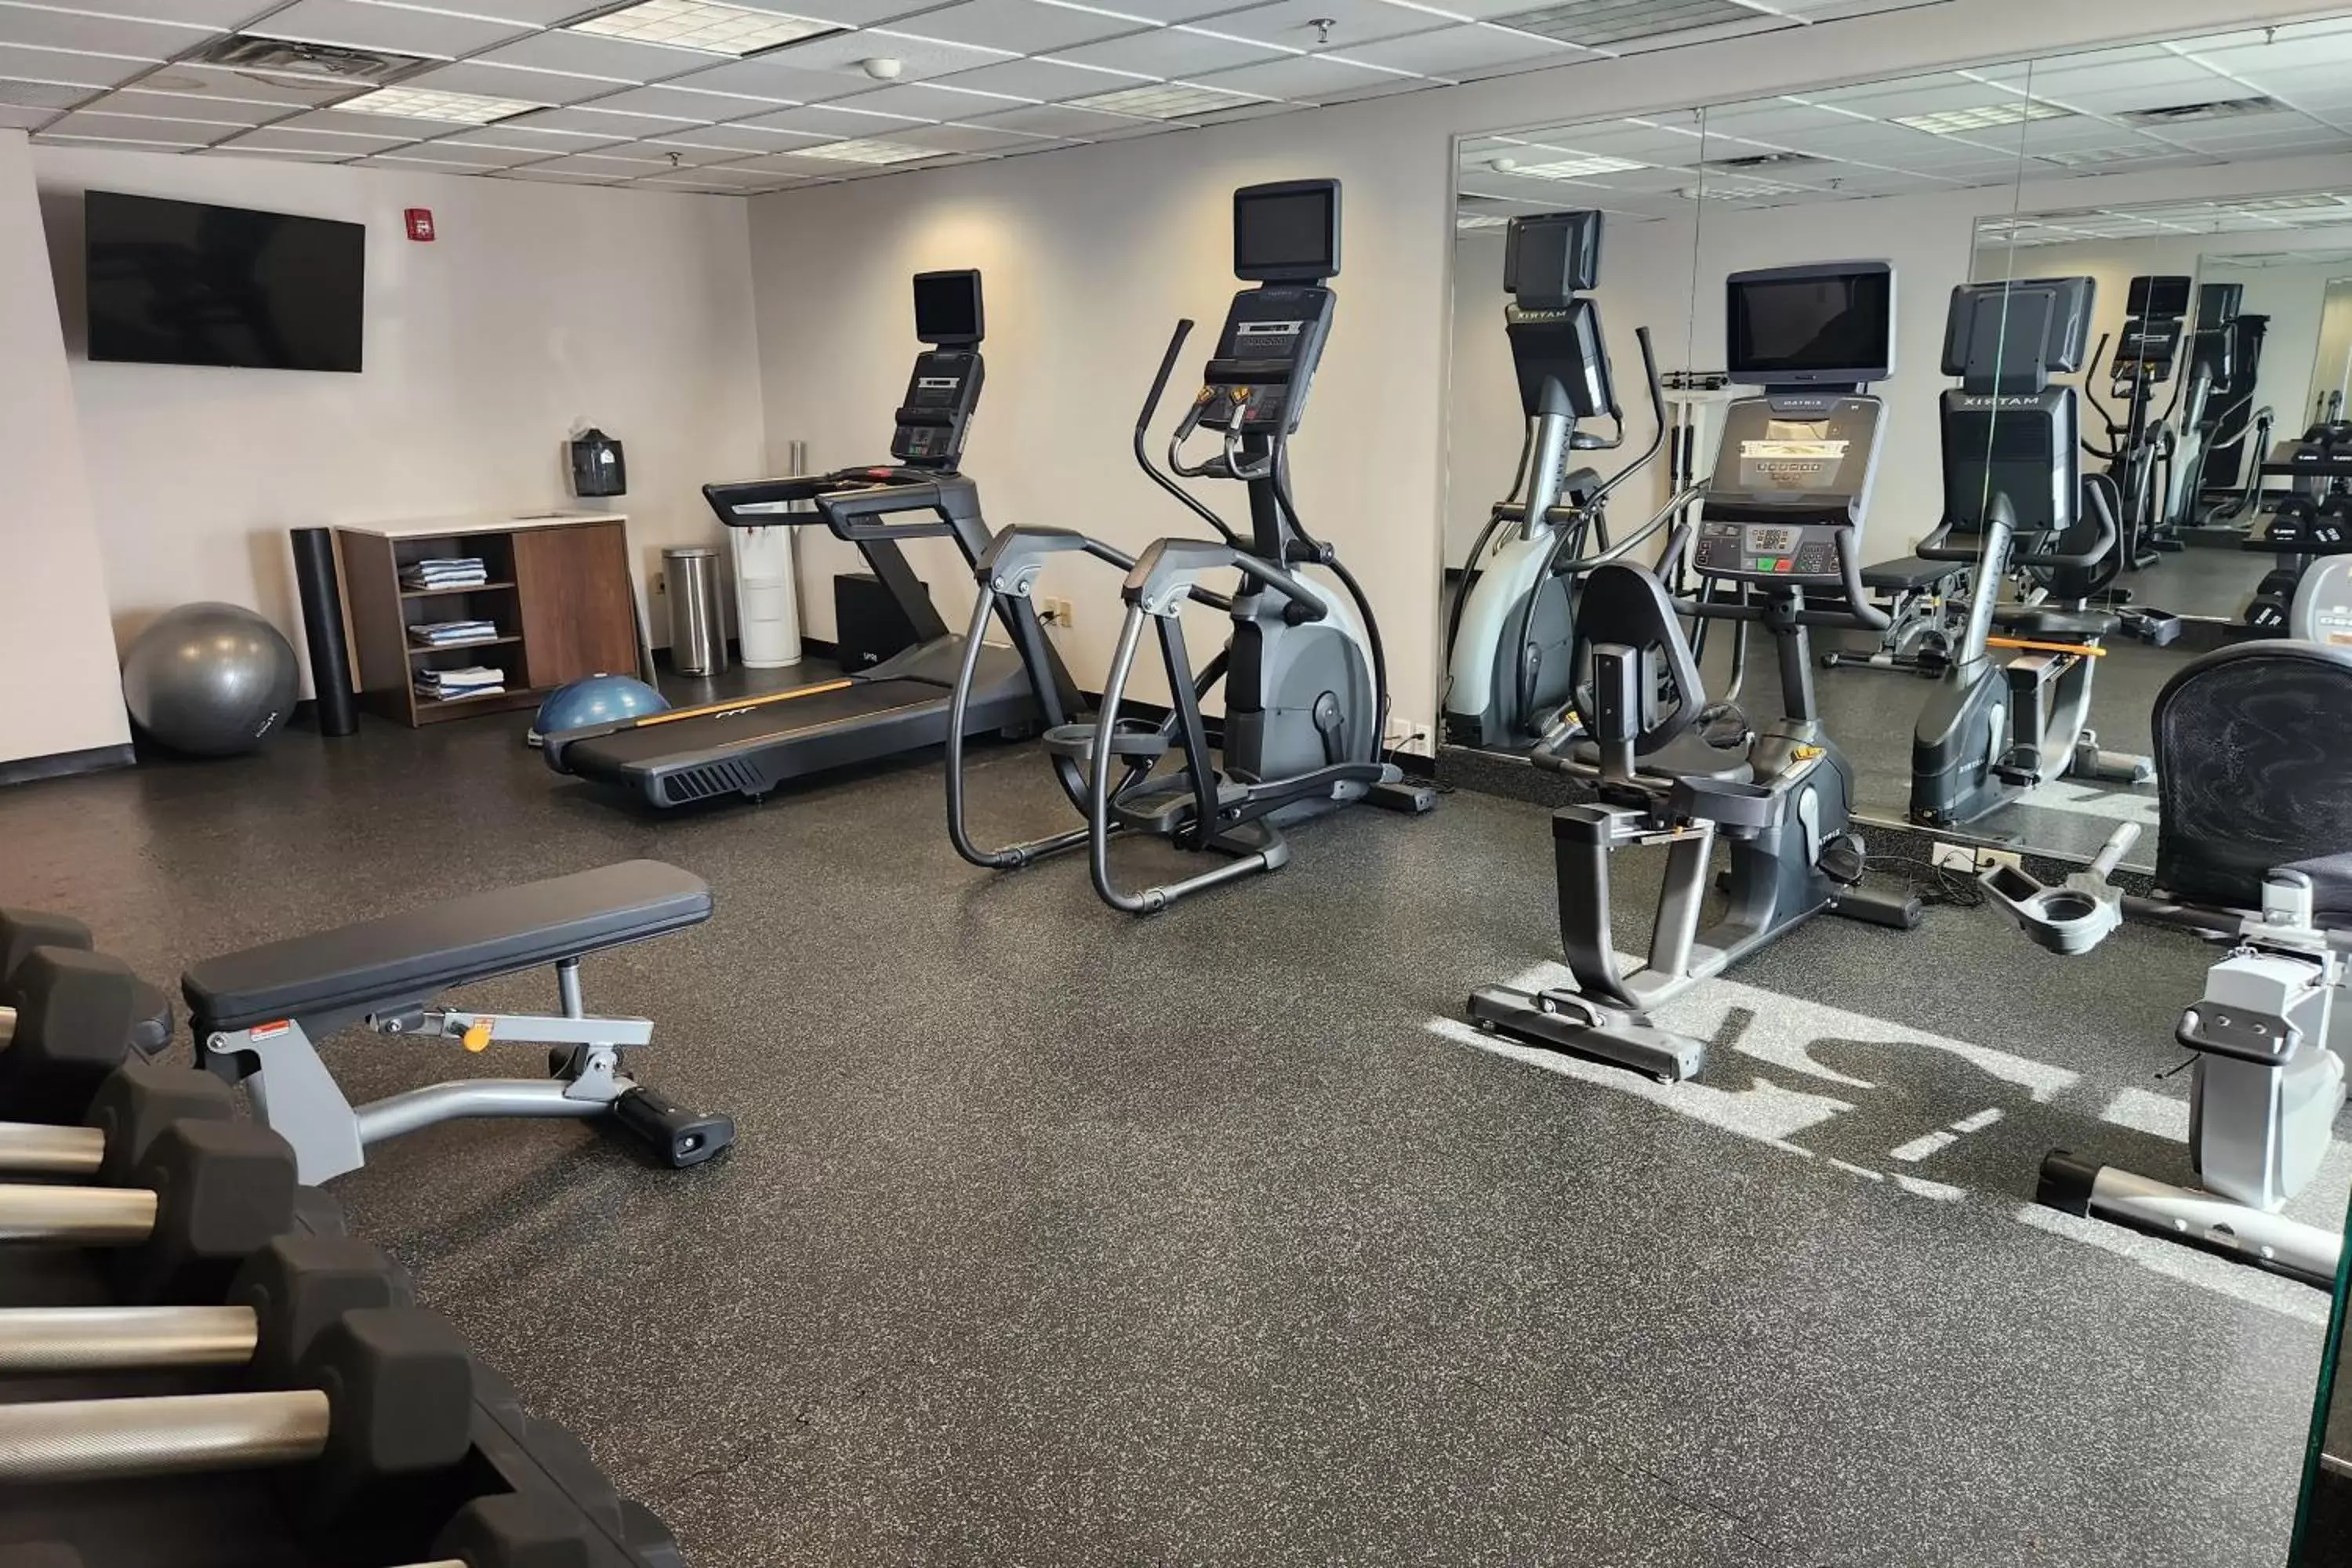 Fitness centre/facilities, Fitness Center/Facilities in Holiday Inn Express Philadelphia NE-Bensalem, an IHG Hotel